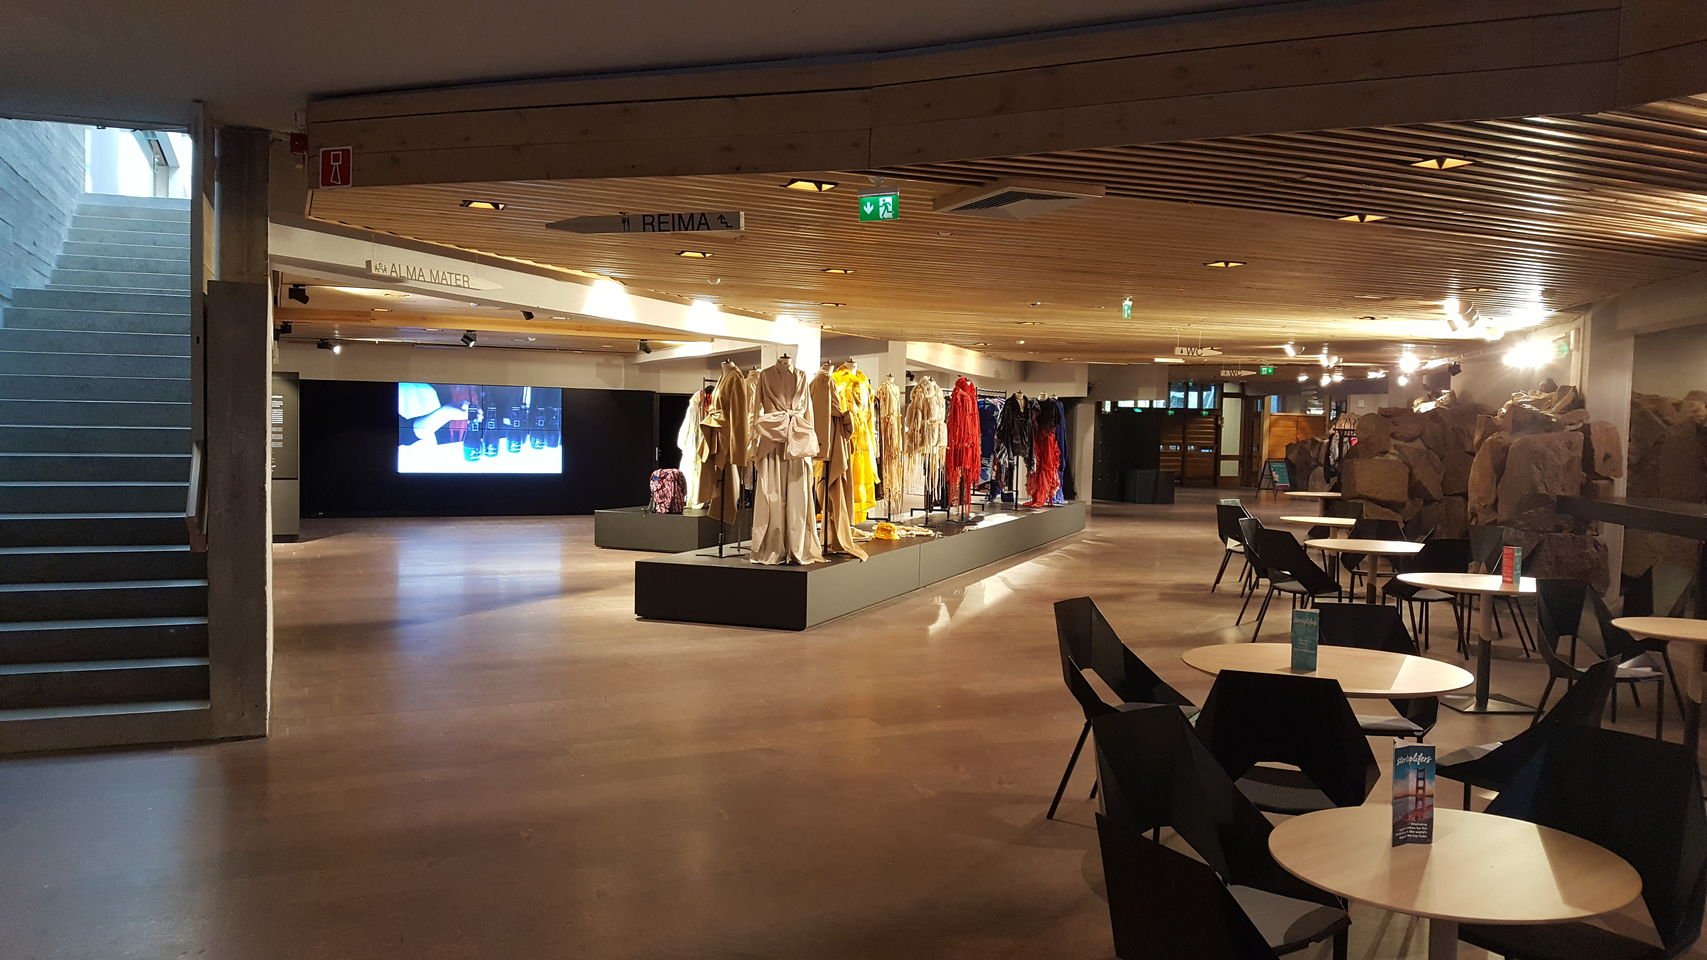 Dipoli-rakennuksen pääsisäänkäynti nimeltään Käpyaula. Kuvassa pitkä aulakäytävä, missä kahvipöytiä ja muodin opiskelijoiden suunnittelemia ja valmistamia vaatteita. Kuva: Aalto-yliopisto, Mirka Elovaara 